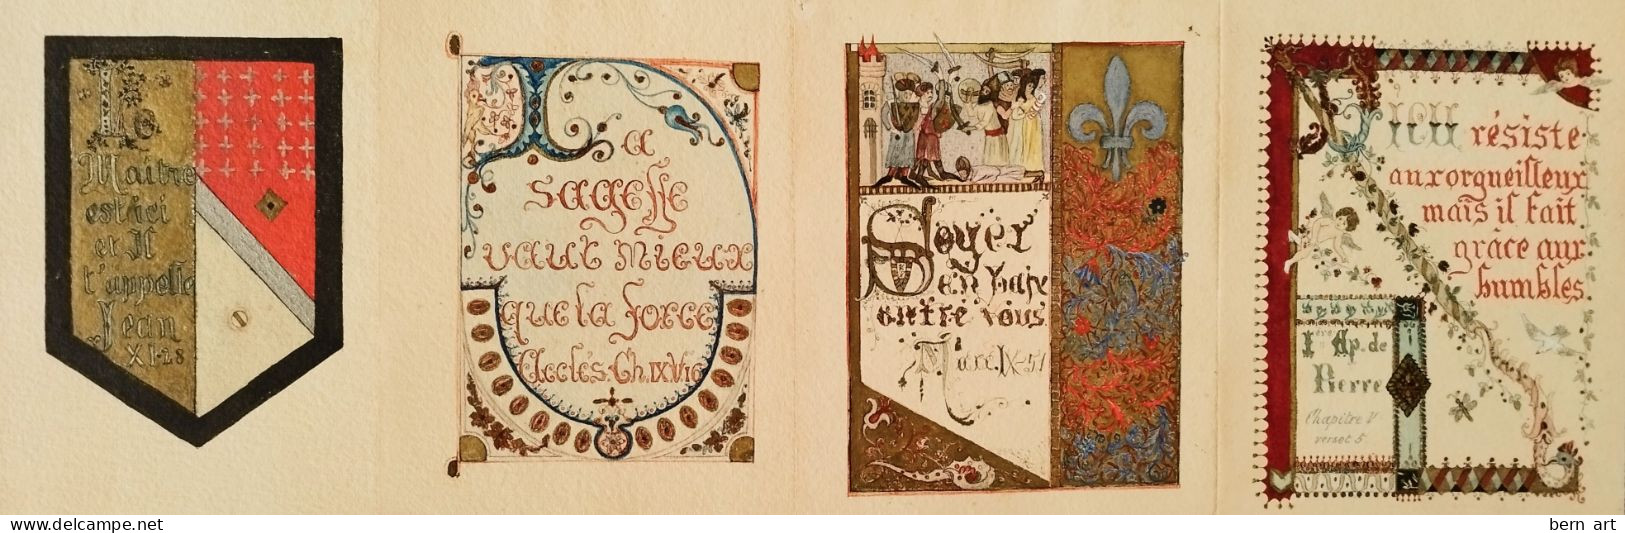 4 Enluminures Fin XIXè sur papier J. WHATMAN. Fond d'Atelier Artiste B.F. (Berthe Flournoy) vers 1900 (Genève)